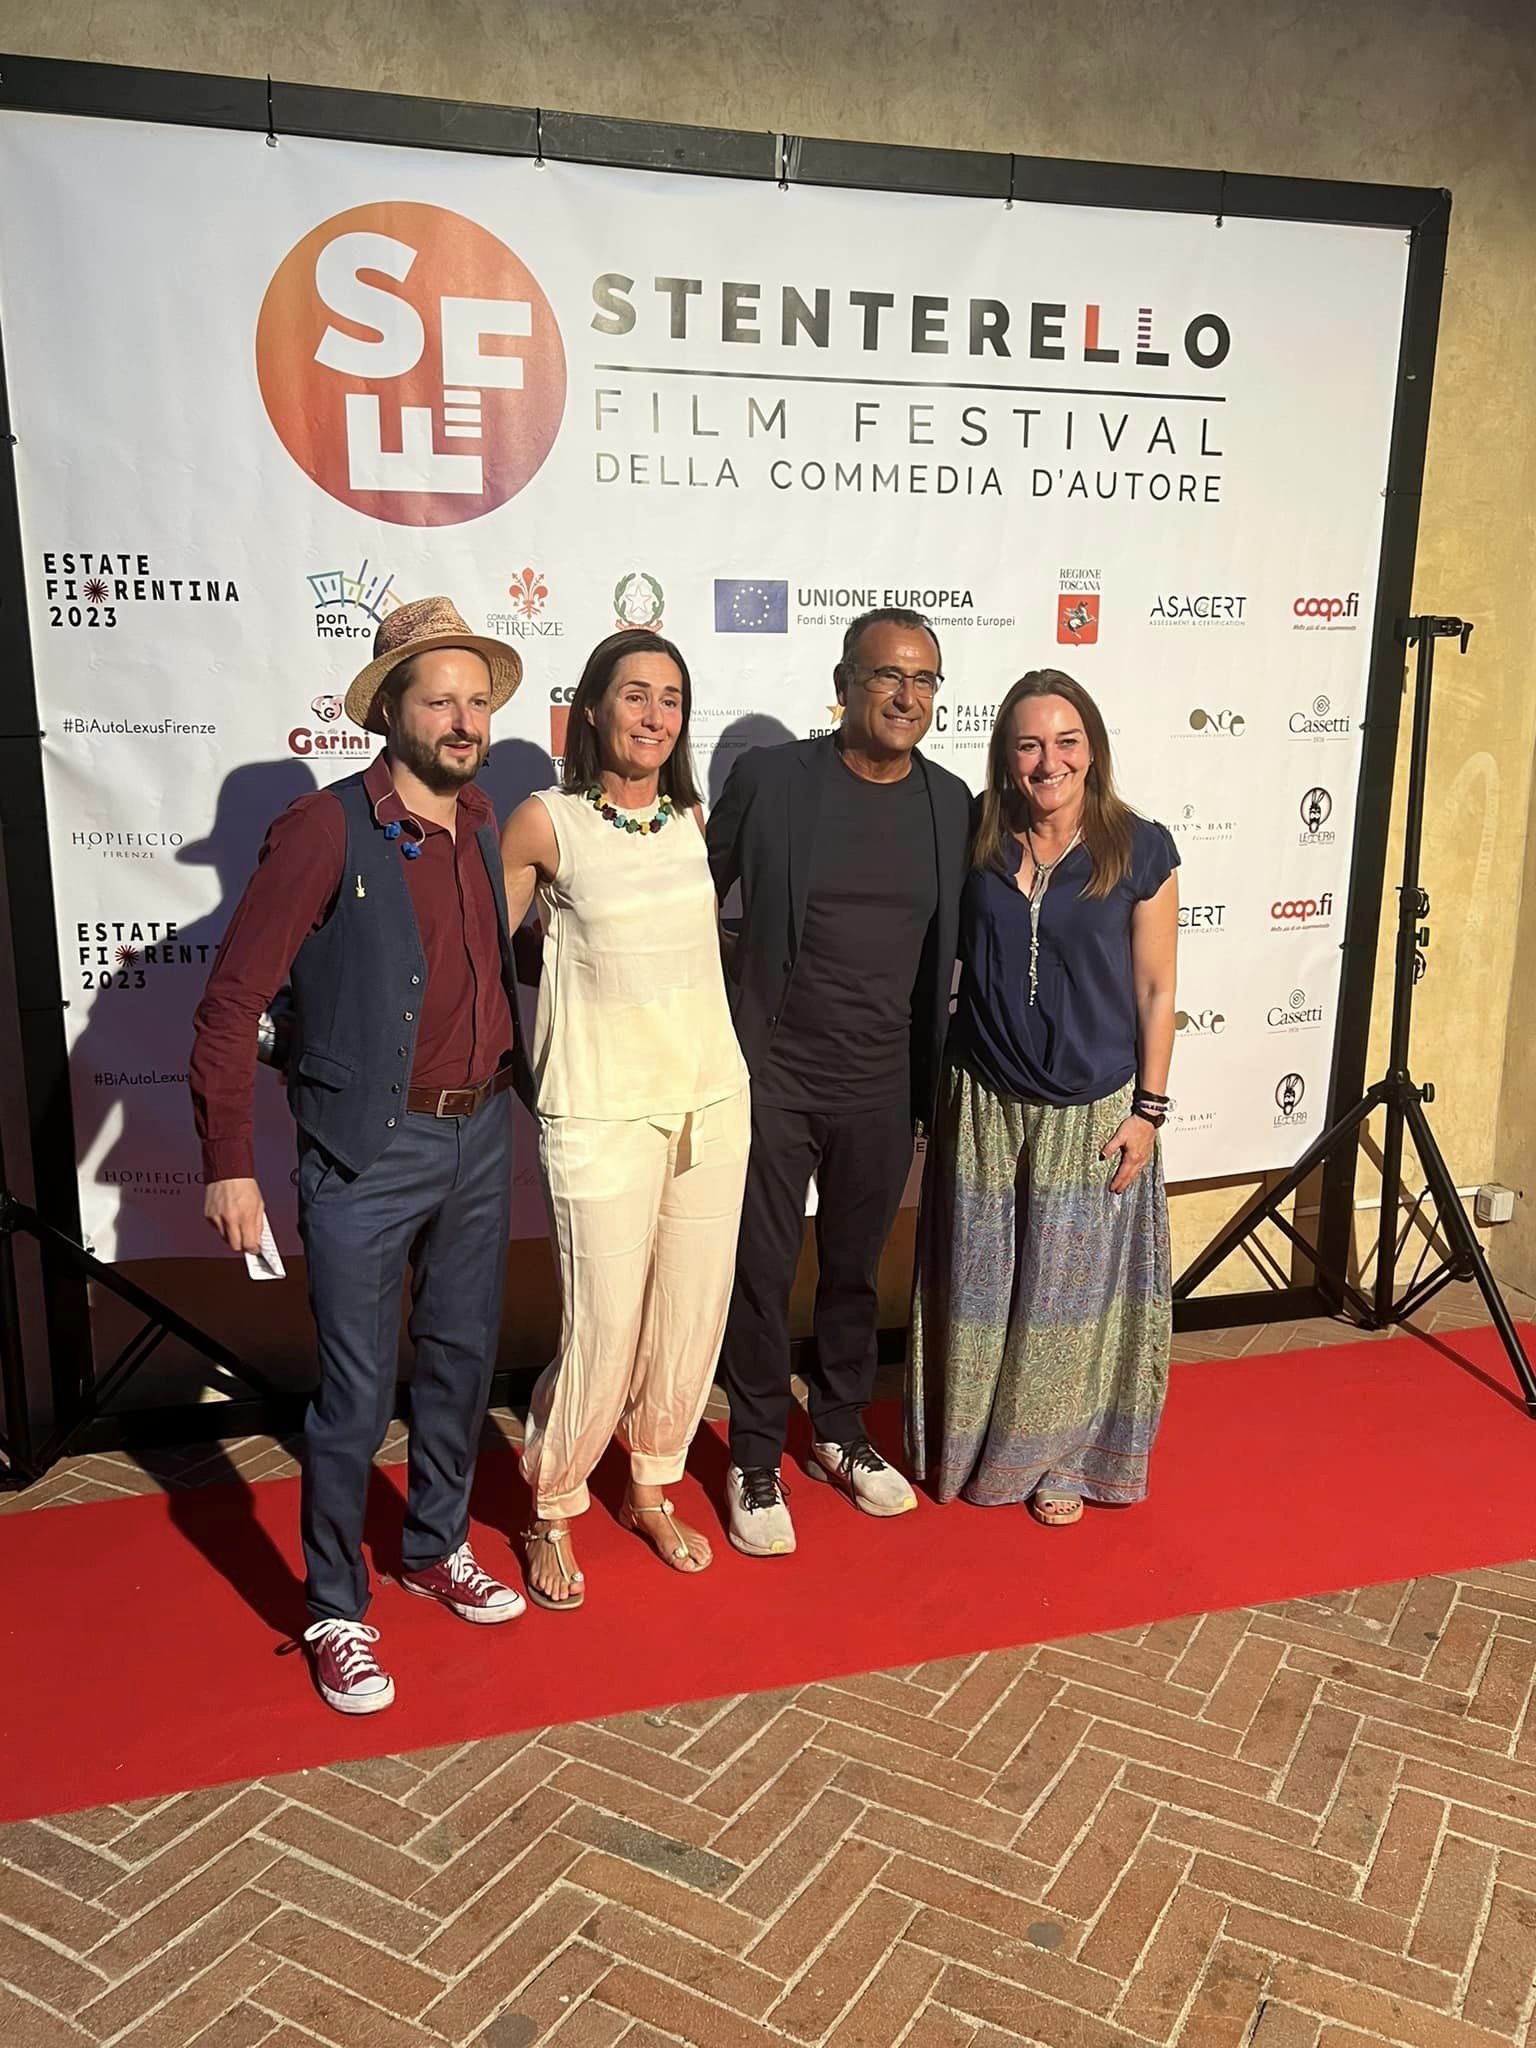 Stenterello Film Festival 2